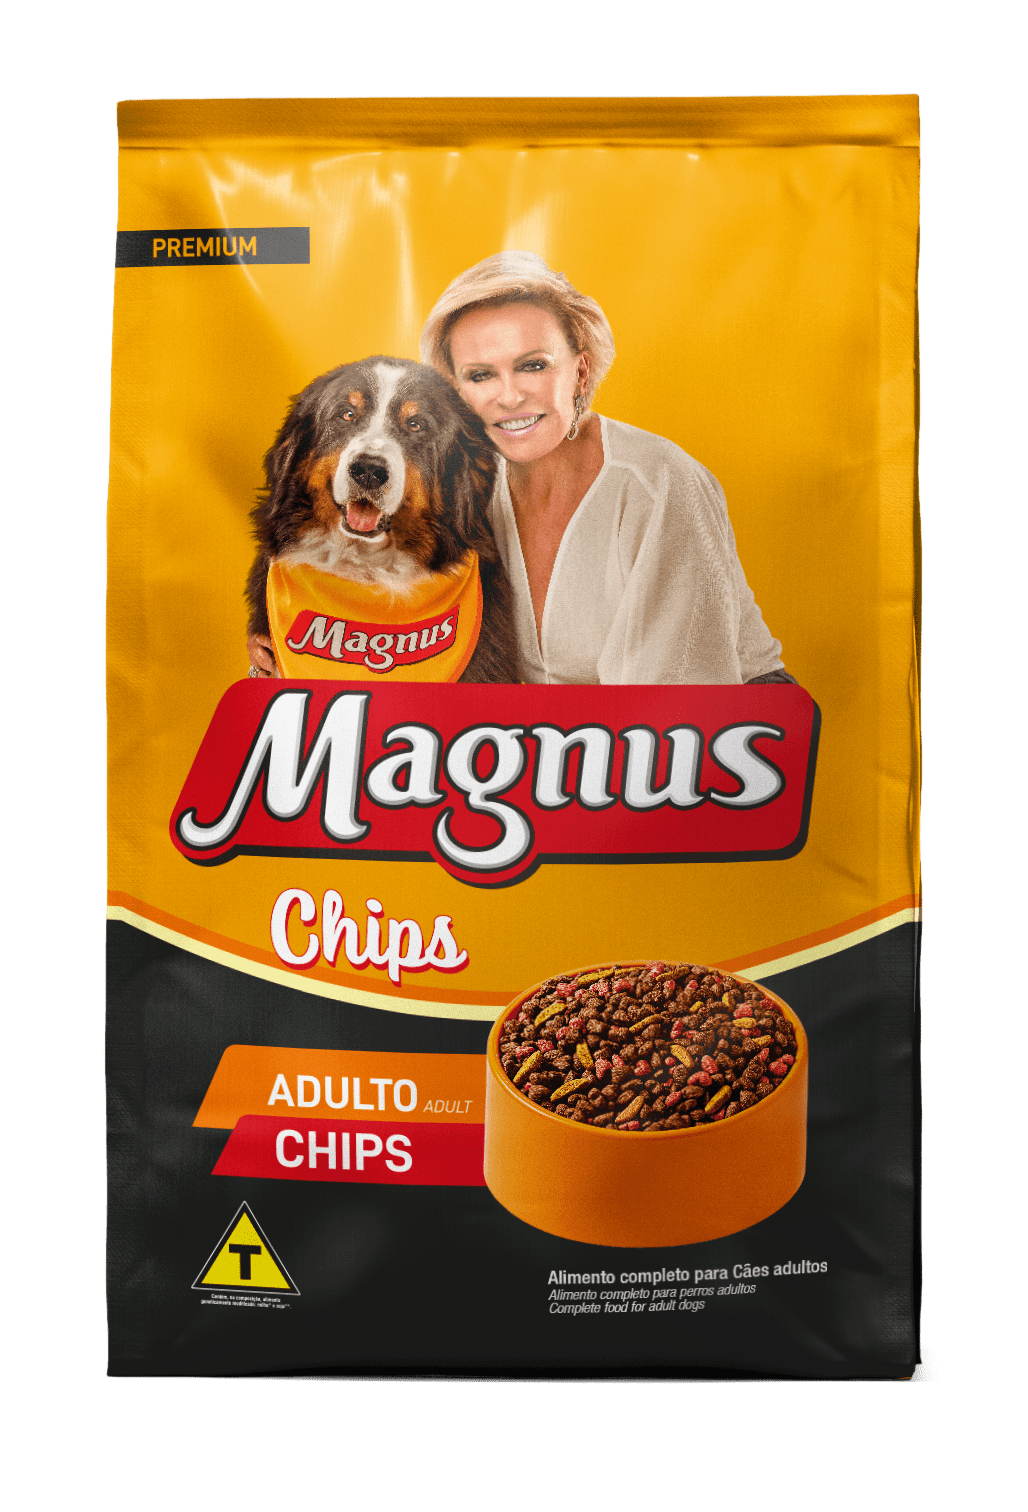 Magnus Premium Adult Dogs Chips